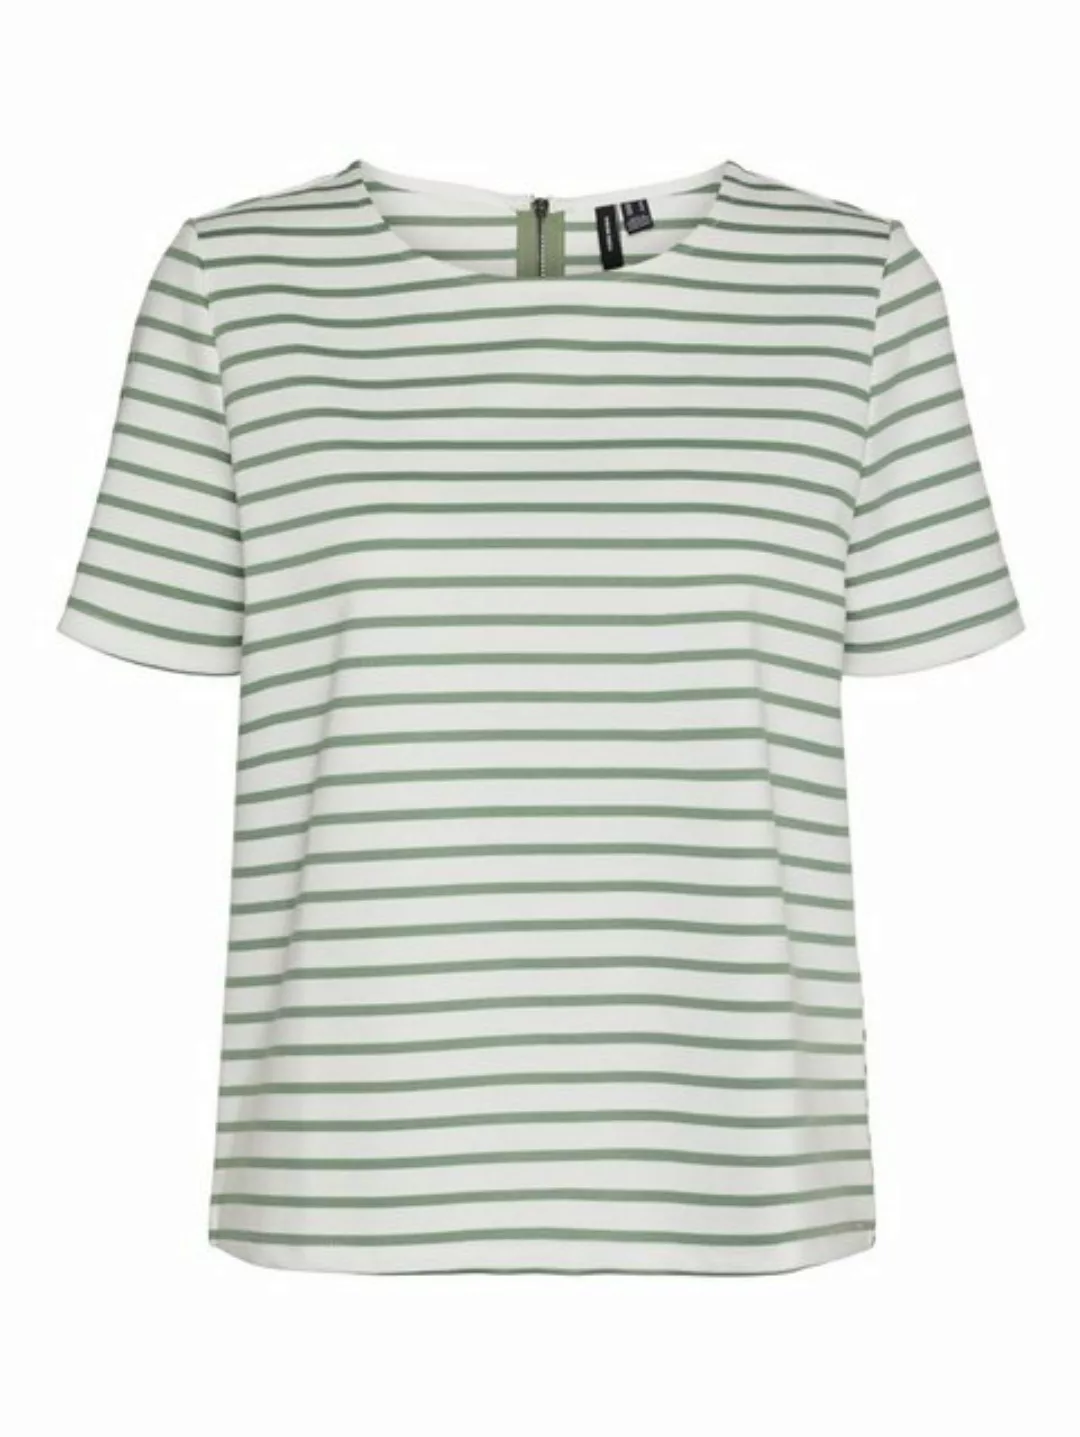 Vero Moda T-Shirt Rundhals Blusen Shirt mit Zip-Fly Design Halb Arm 7063 in günstig online kaufen